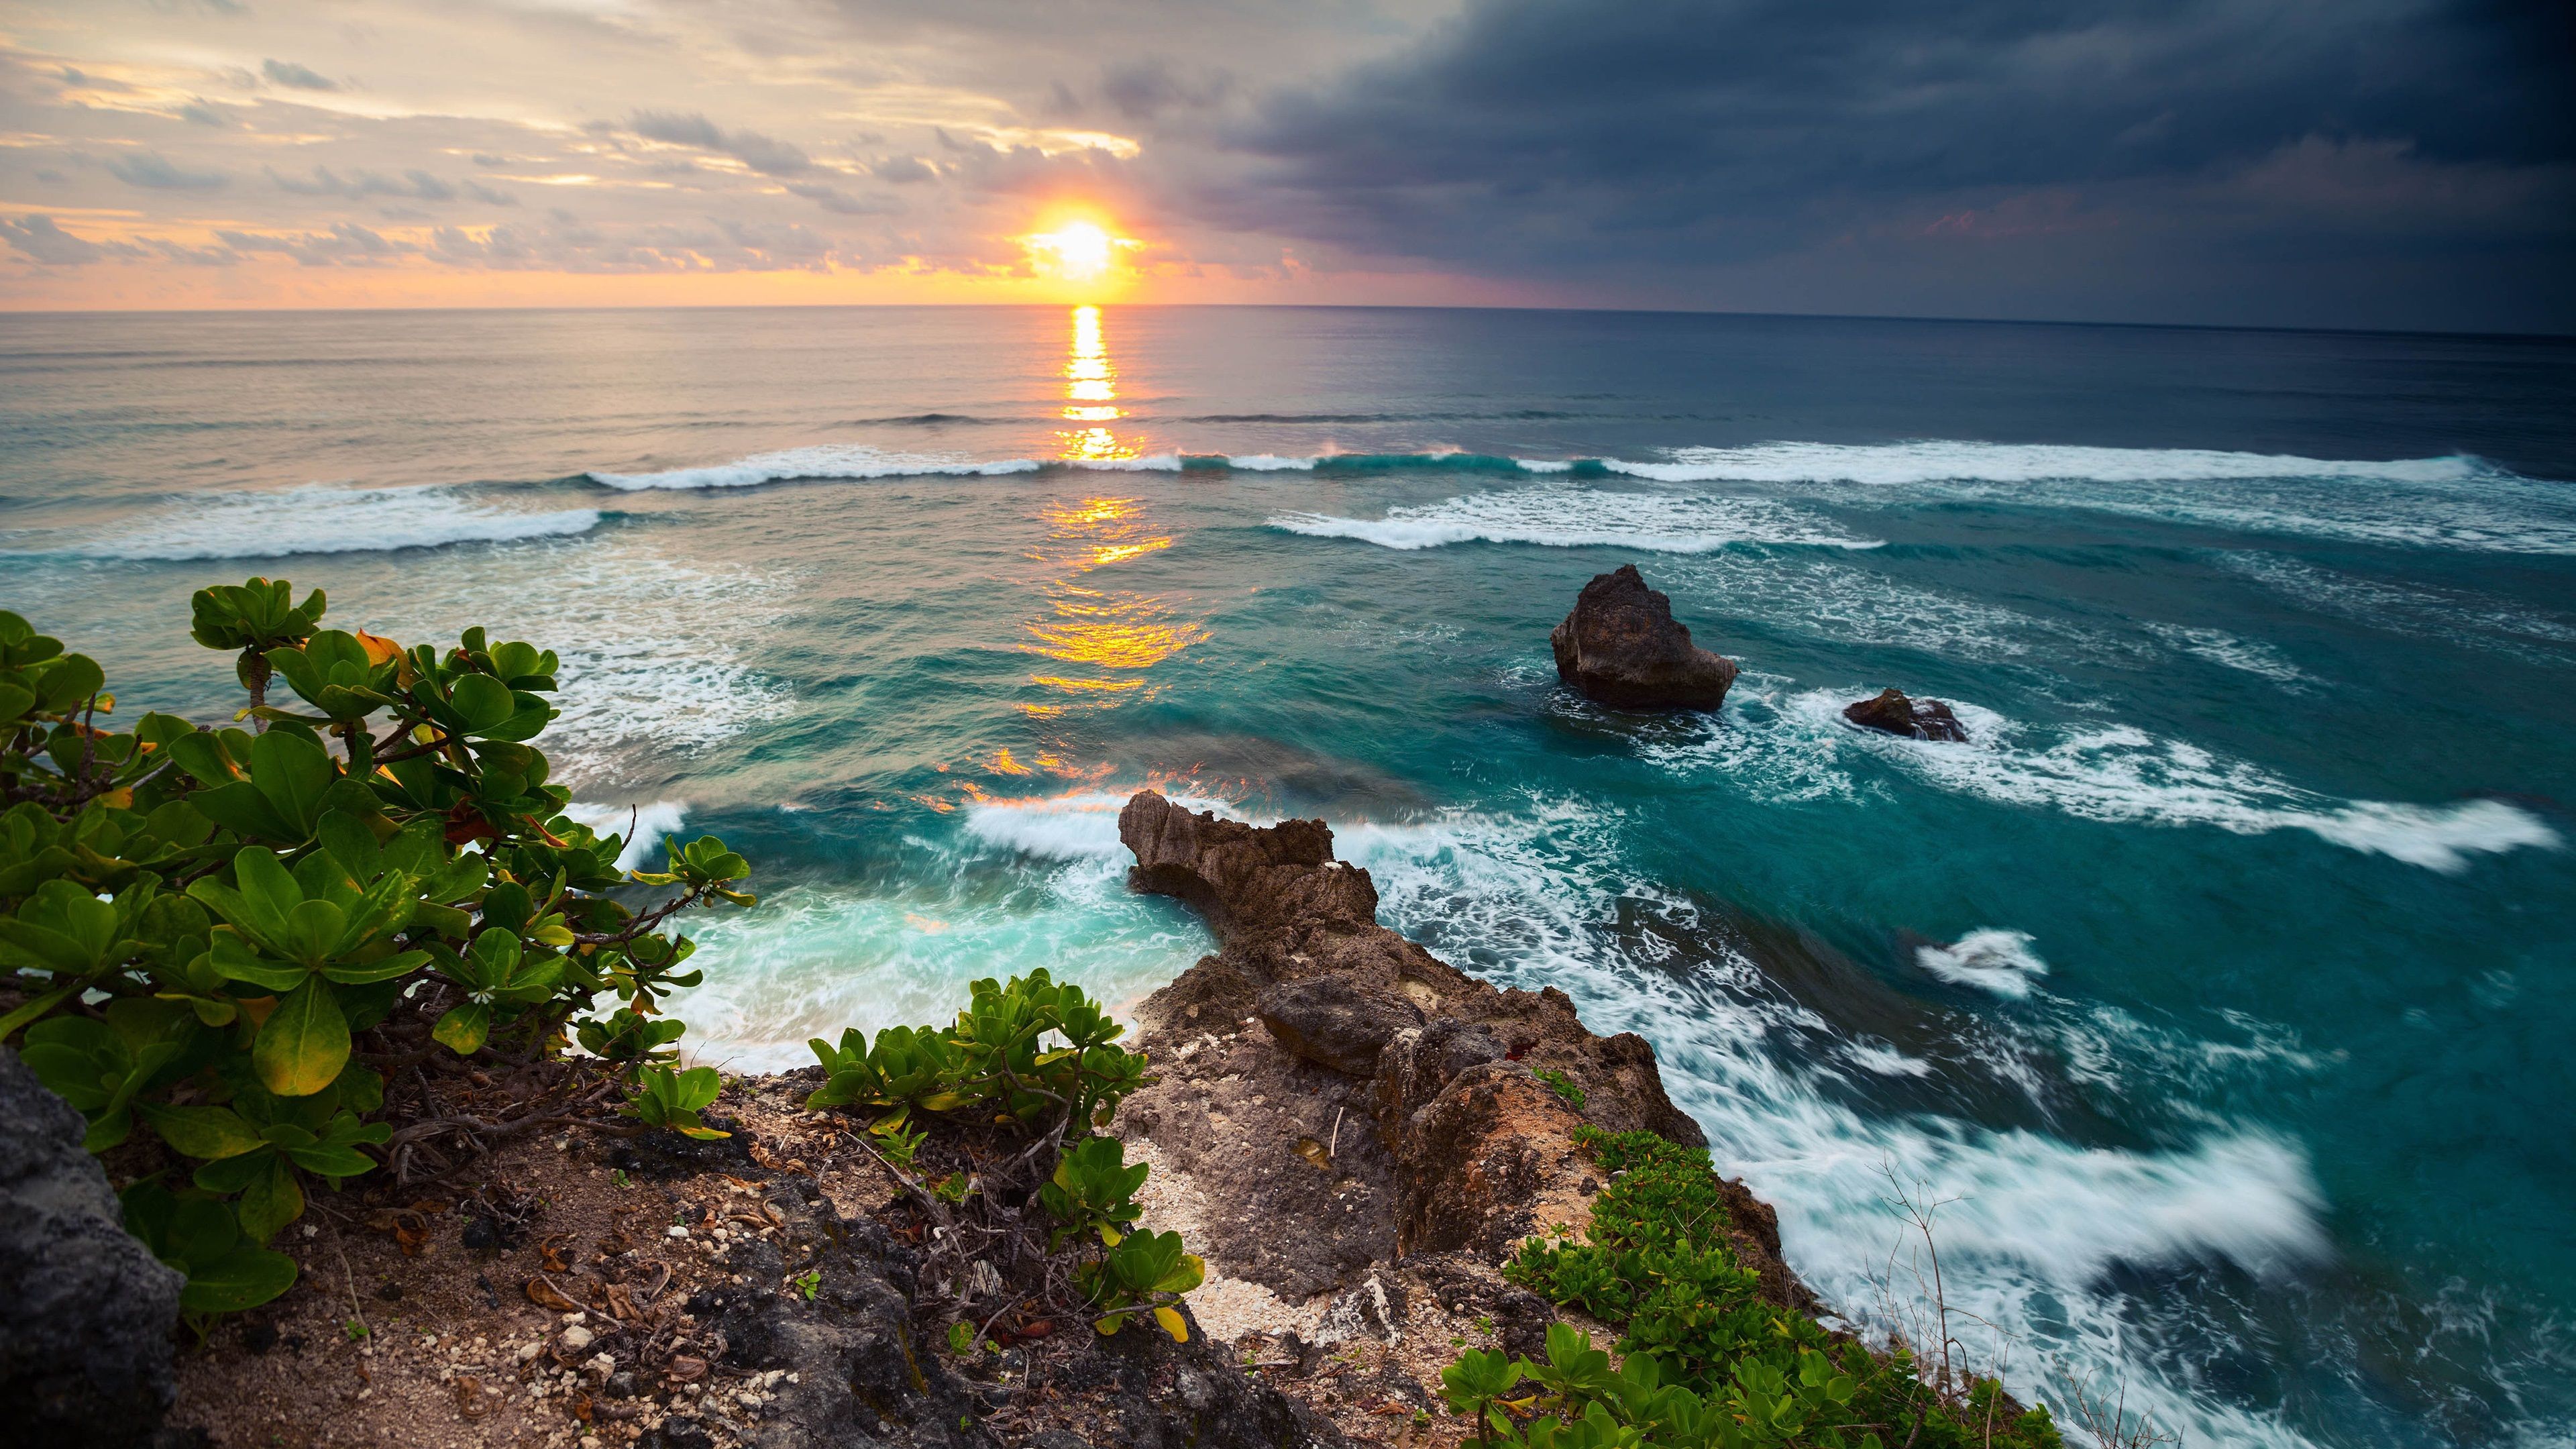 عکس تابش نور خورشید بر فراز دریا در جزیره بالی hd